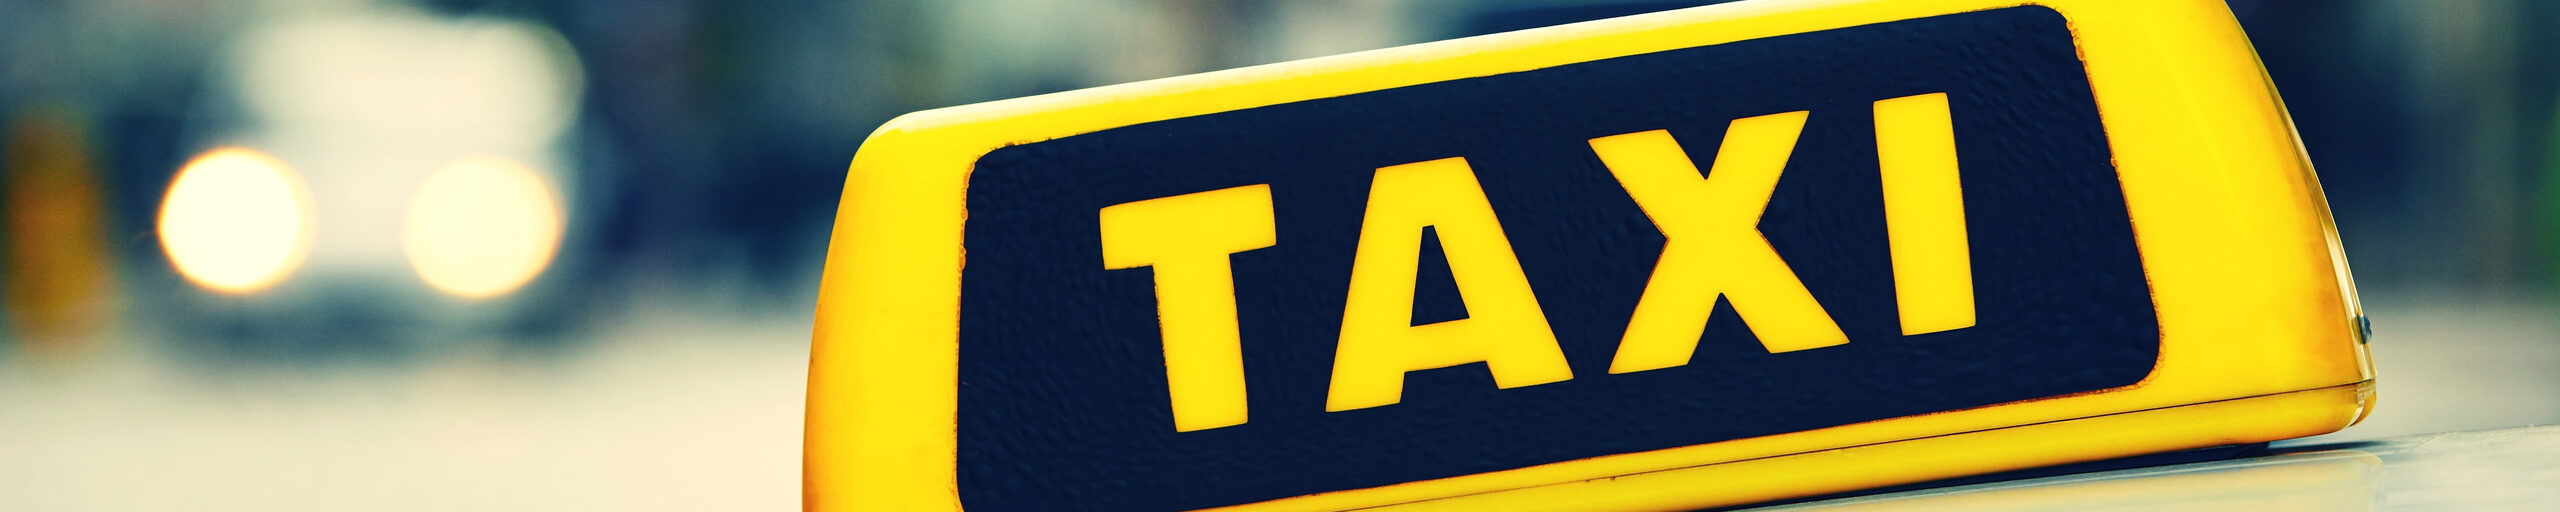 Taxischild auf einem Taxi